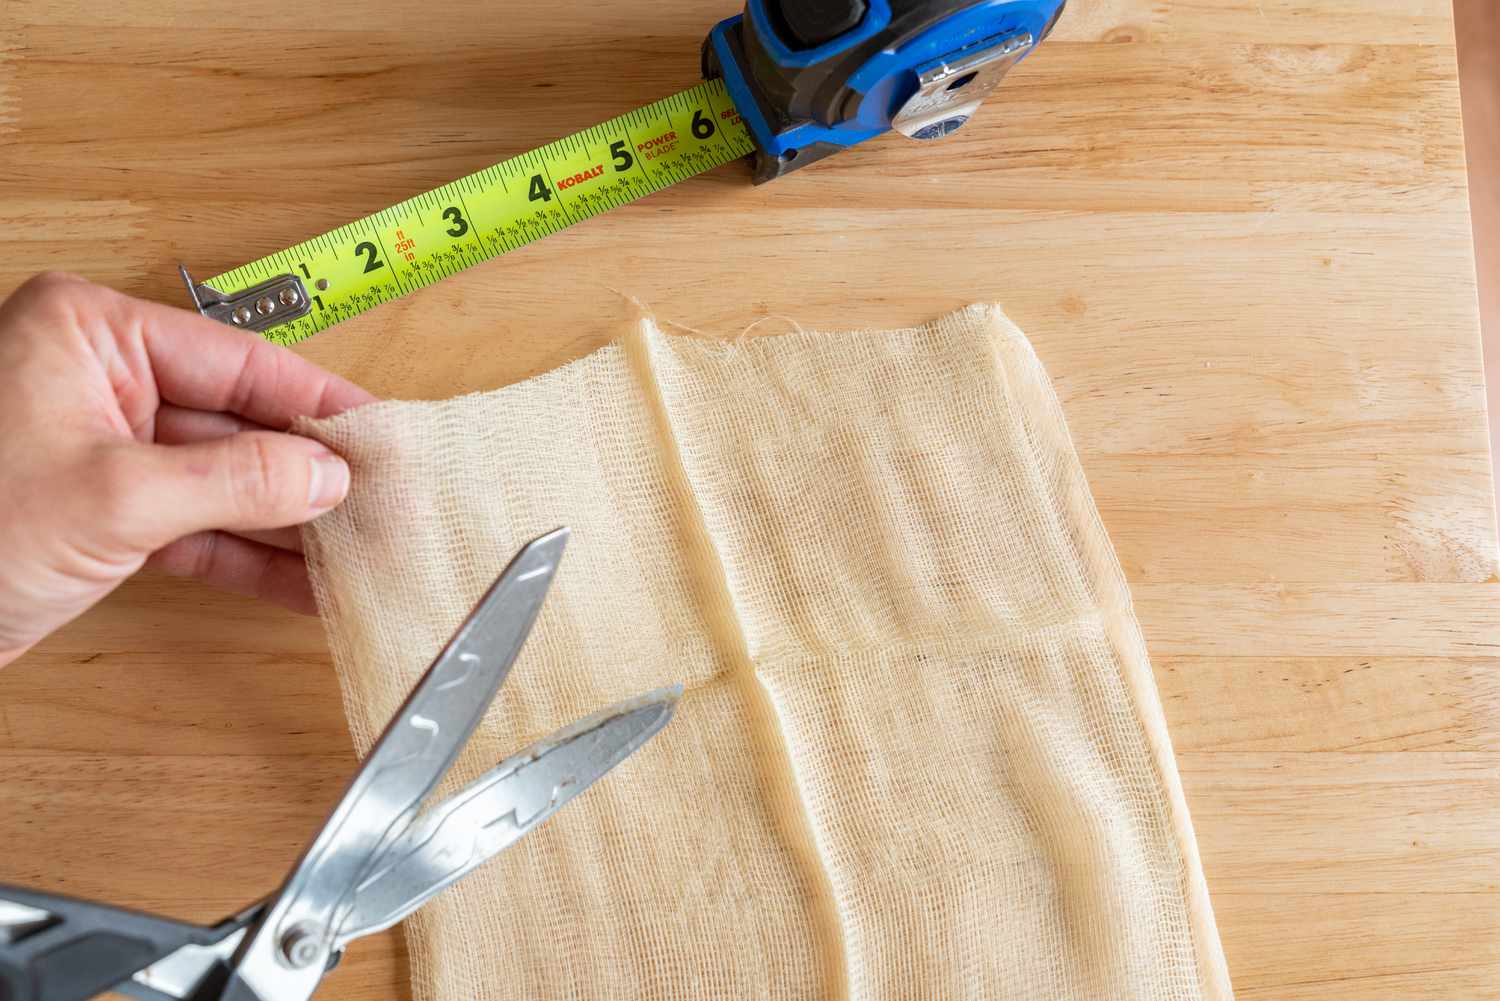 Tack cloth sendo cortado com uma tesoura ao lado de uma fita métrica